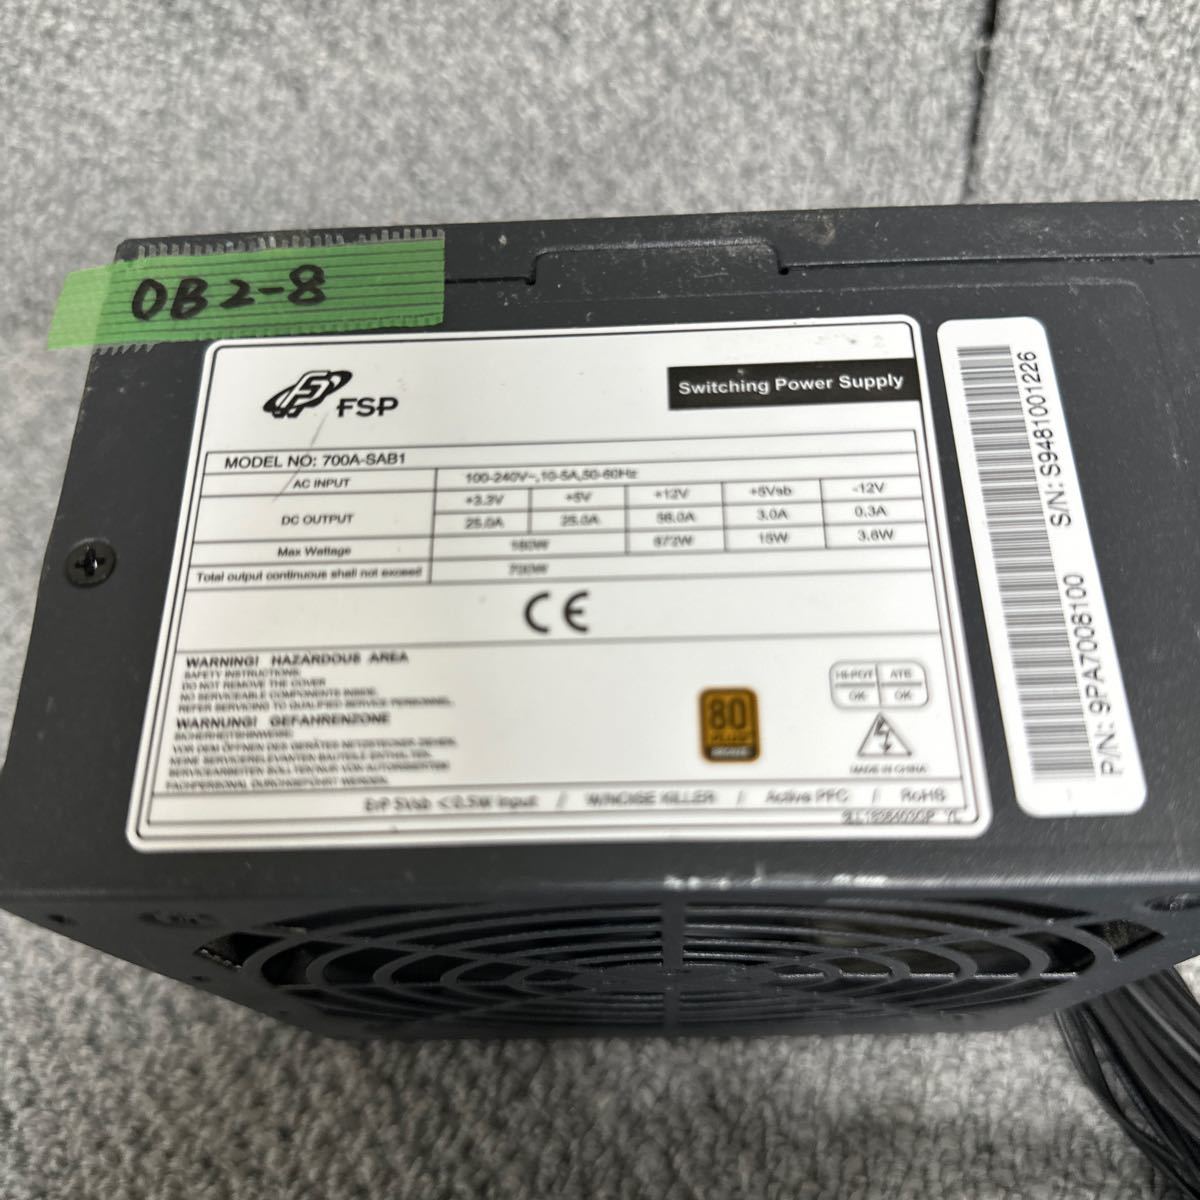 DB2-8 激安 PC 電源BOX FSP 700A-SAB1 700W 電源ユニット 電源テスターにて電圧確認済み　中古品_画像2